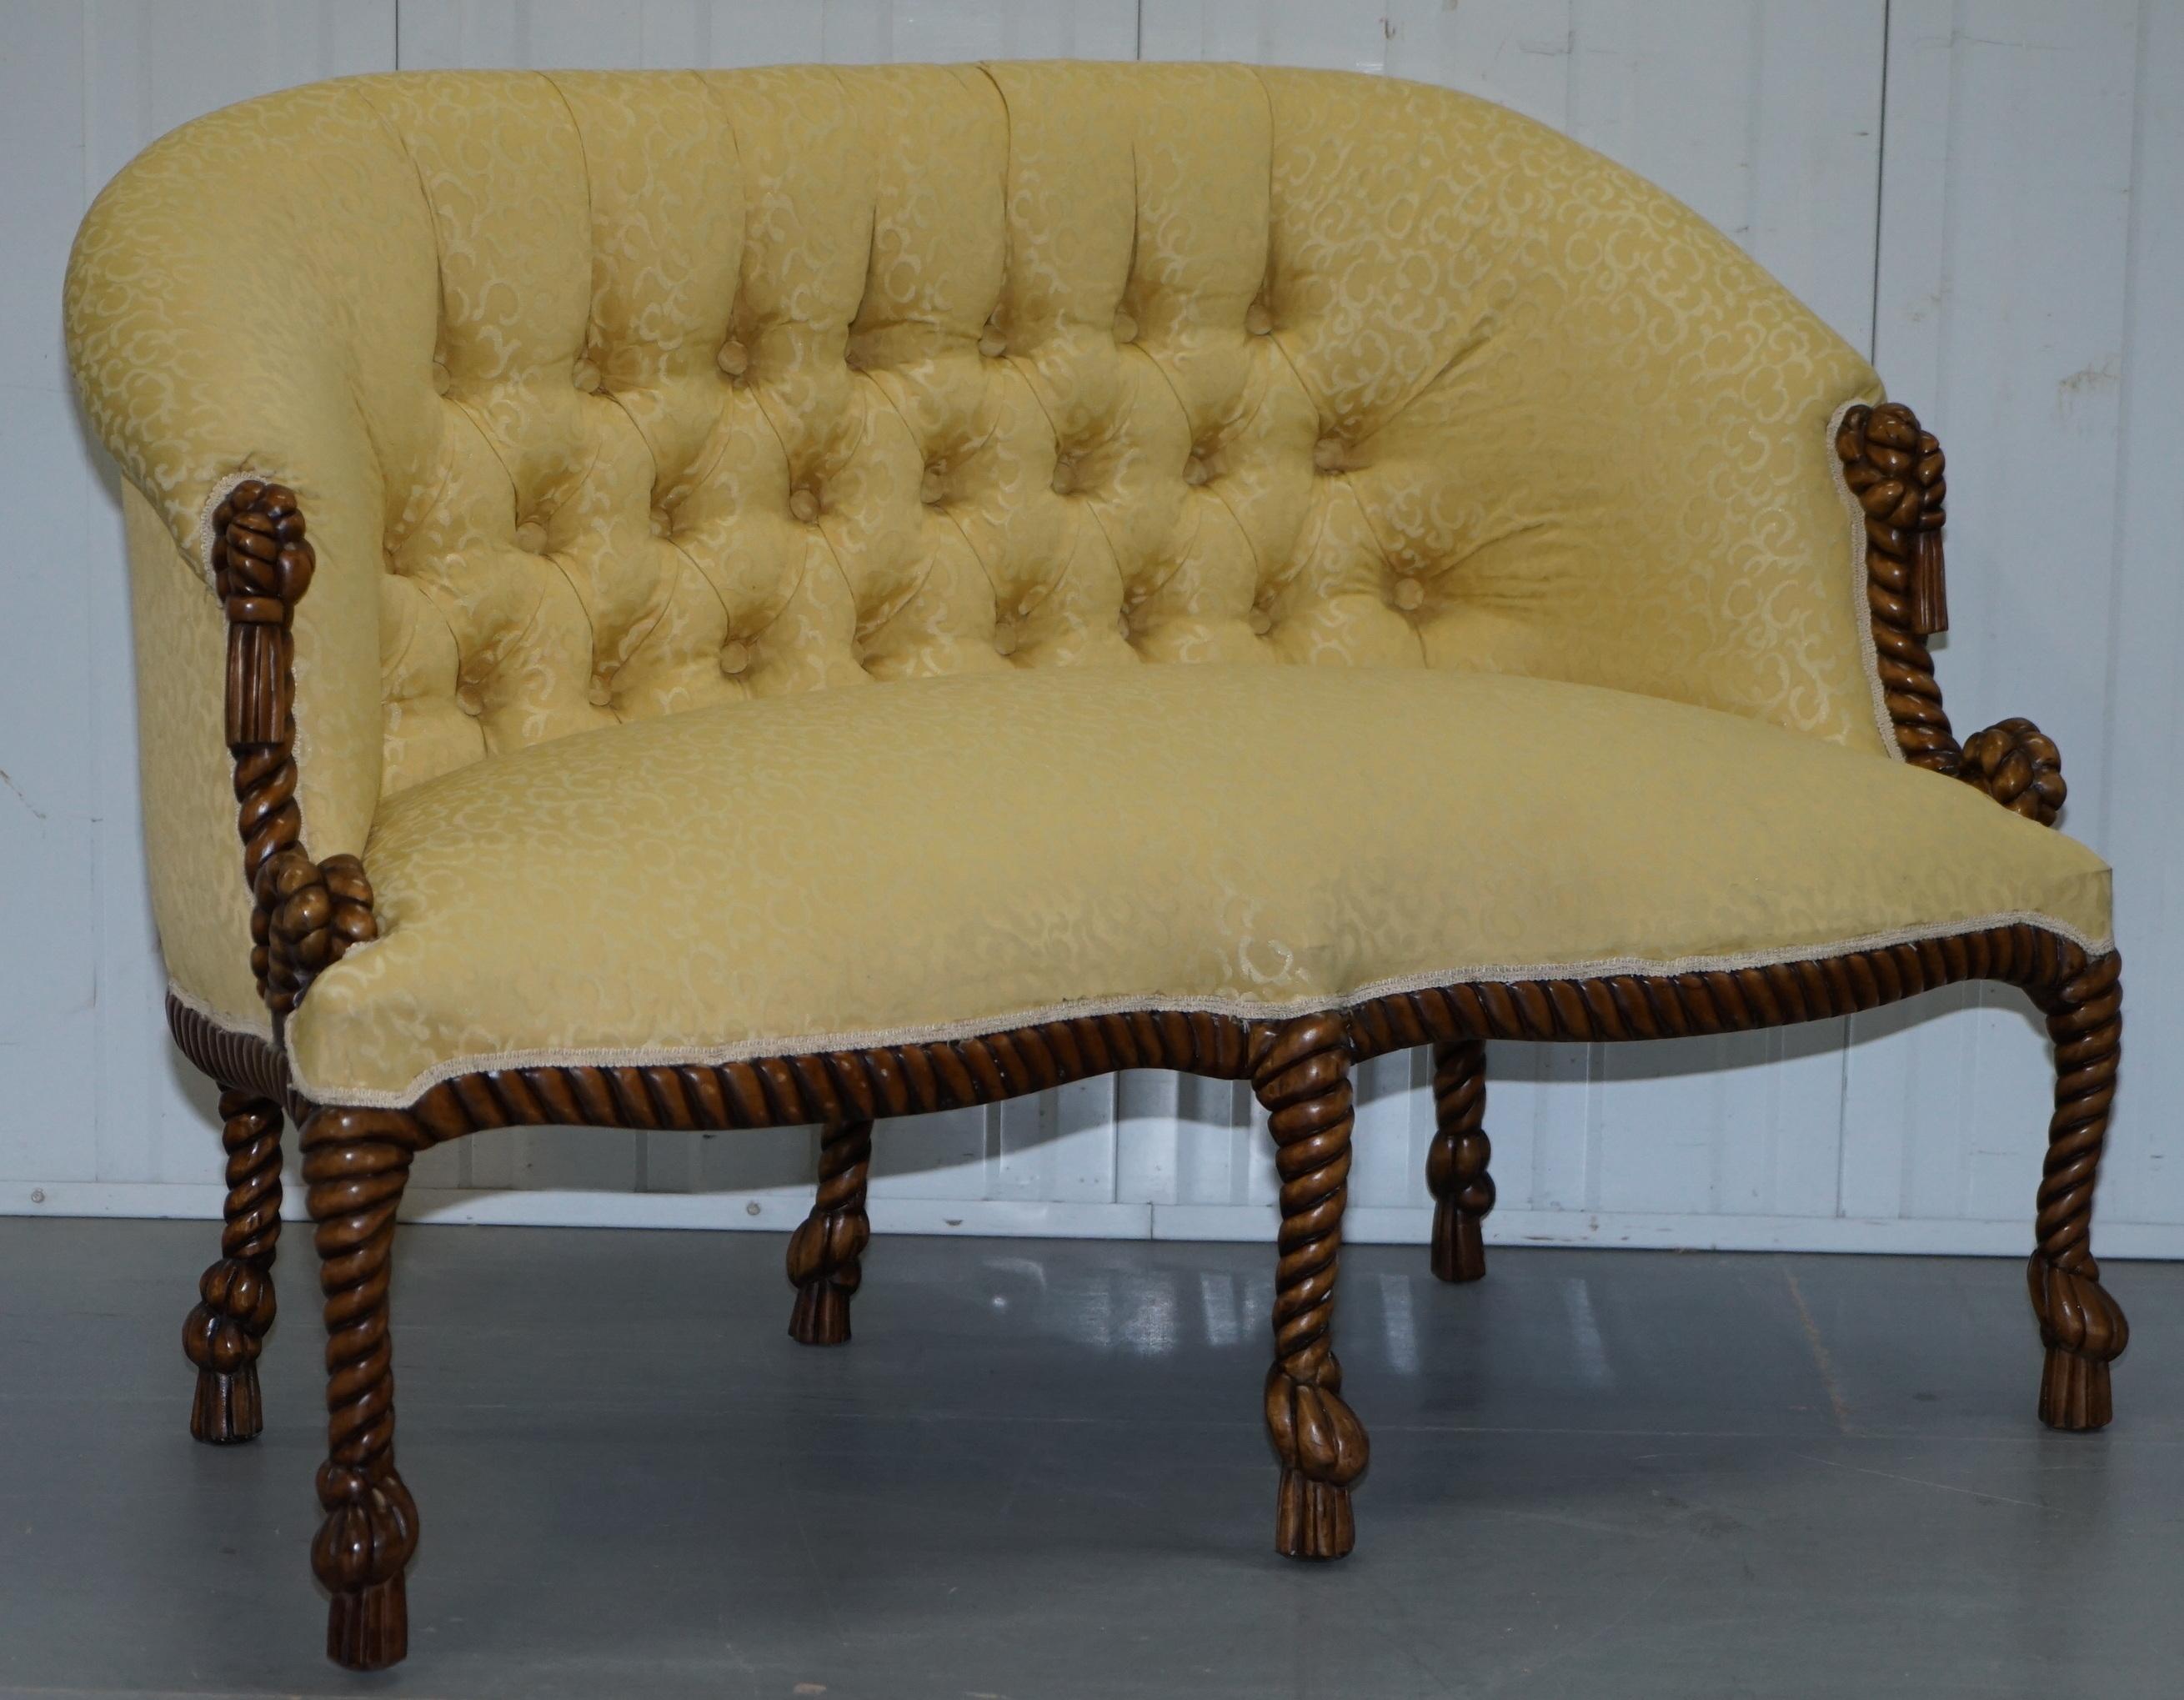 Nous sommes ravis d'offrir à la vente cette belle suite de sièges de style Napoléon III du début du 20ème siècle

Les fauteuils sont mis en vente de temps en temps, mais je n'ai jamais eu besoin d'un canapé auparavant. La paire est dans un état